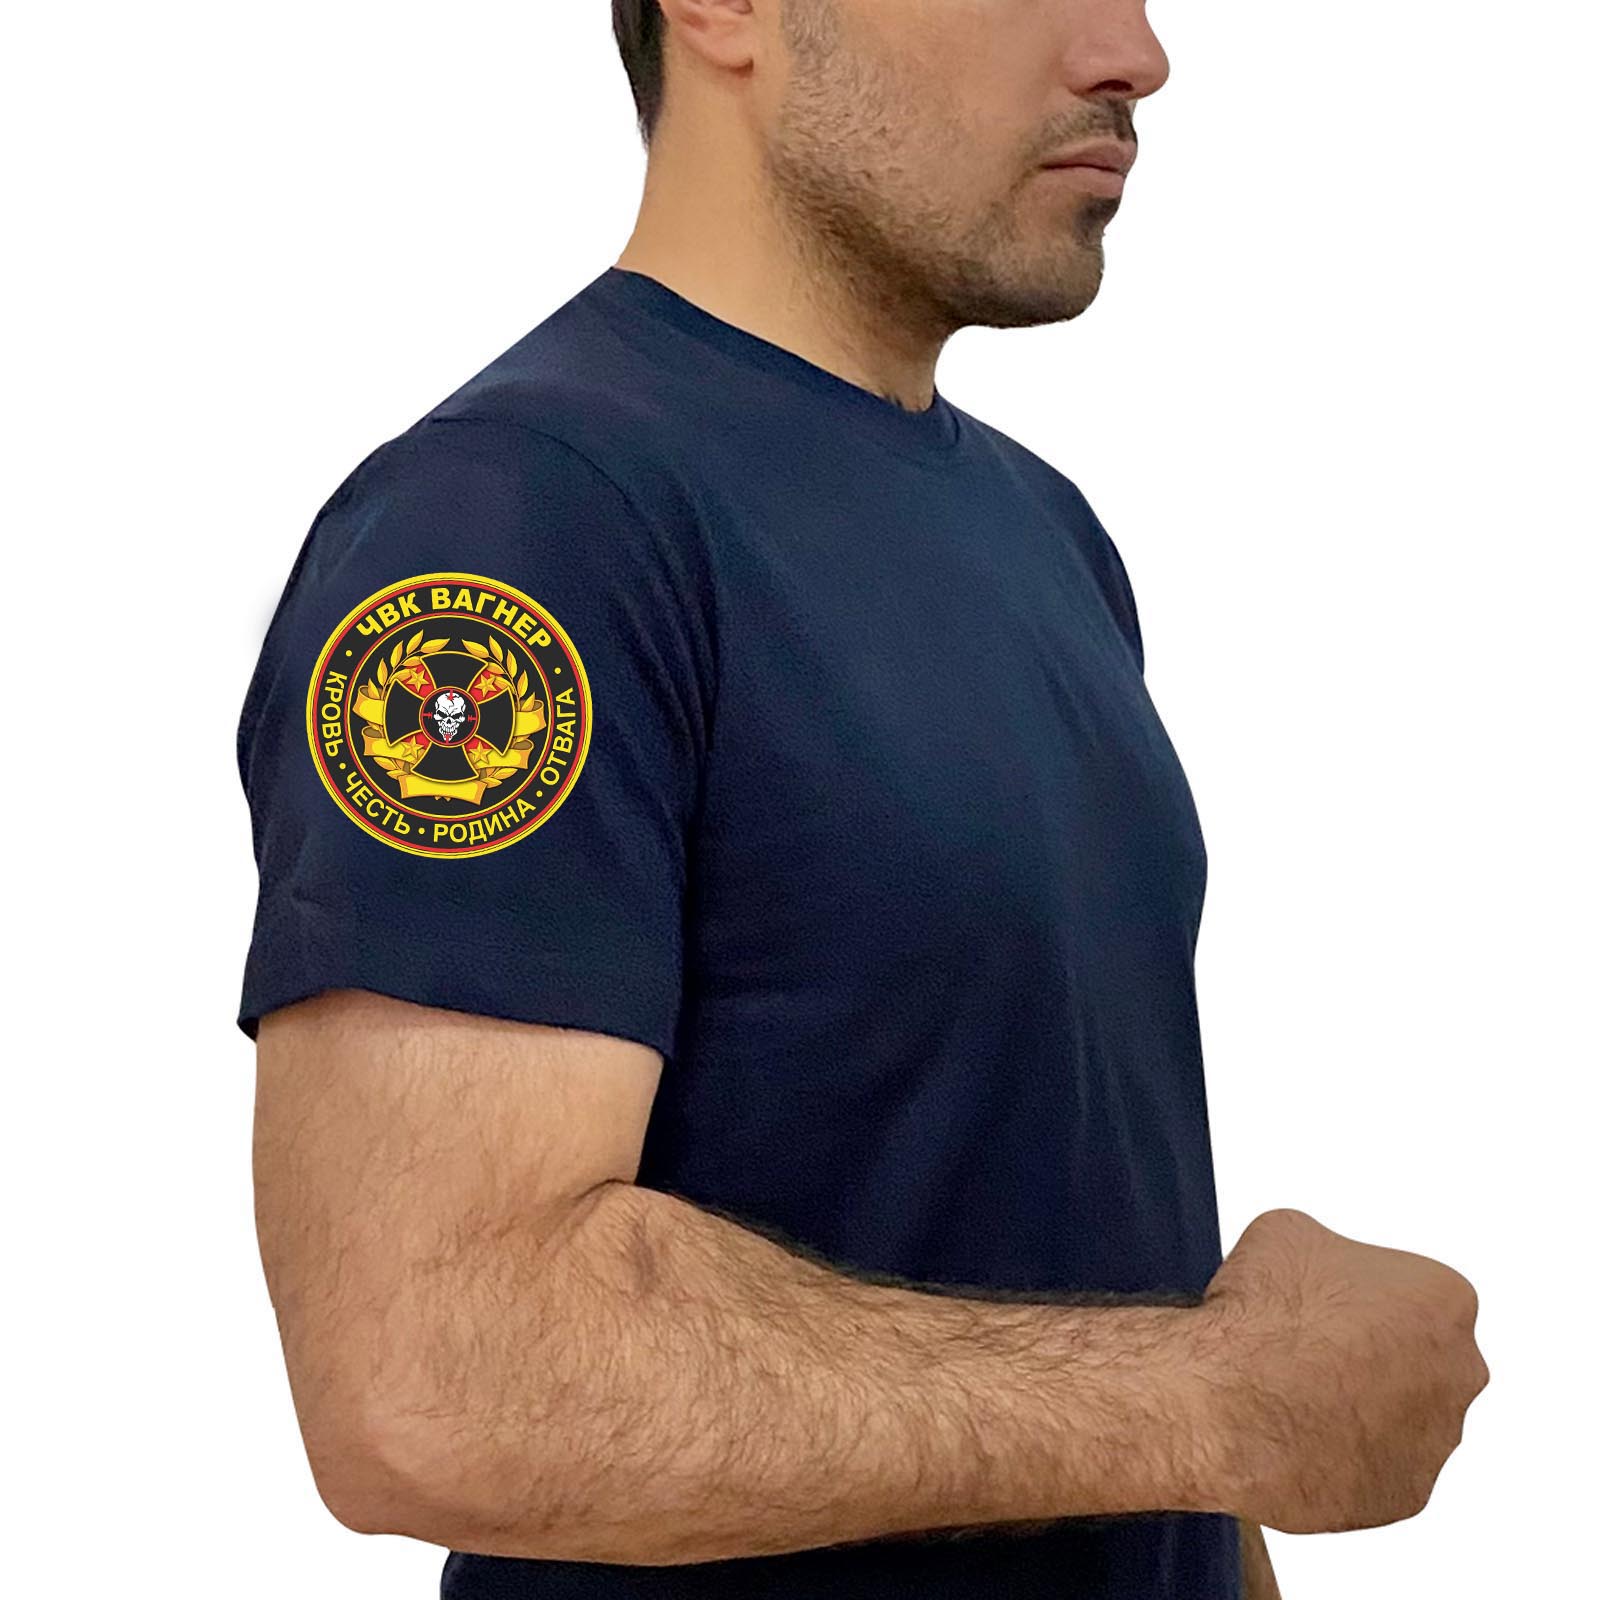 Купить надежную хлопковую футболку с термотрансфером ЧВК Вагнер онлайн